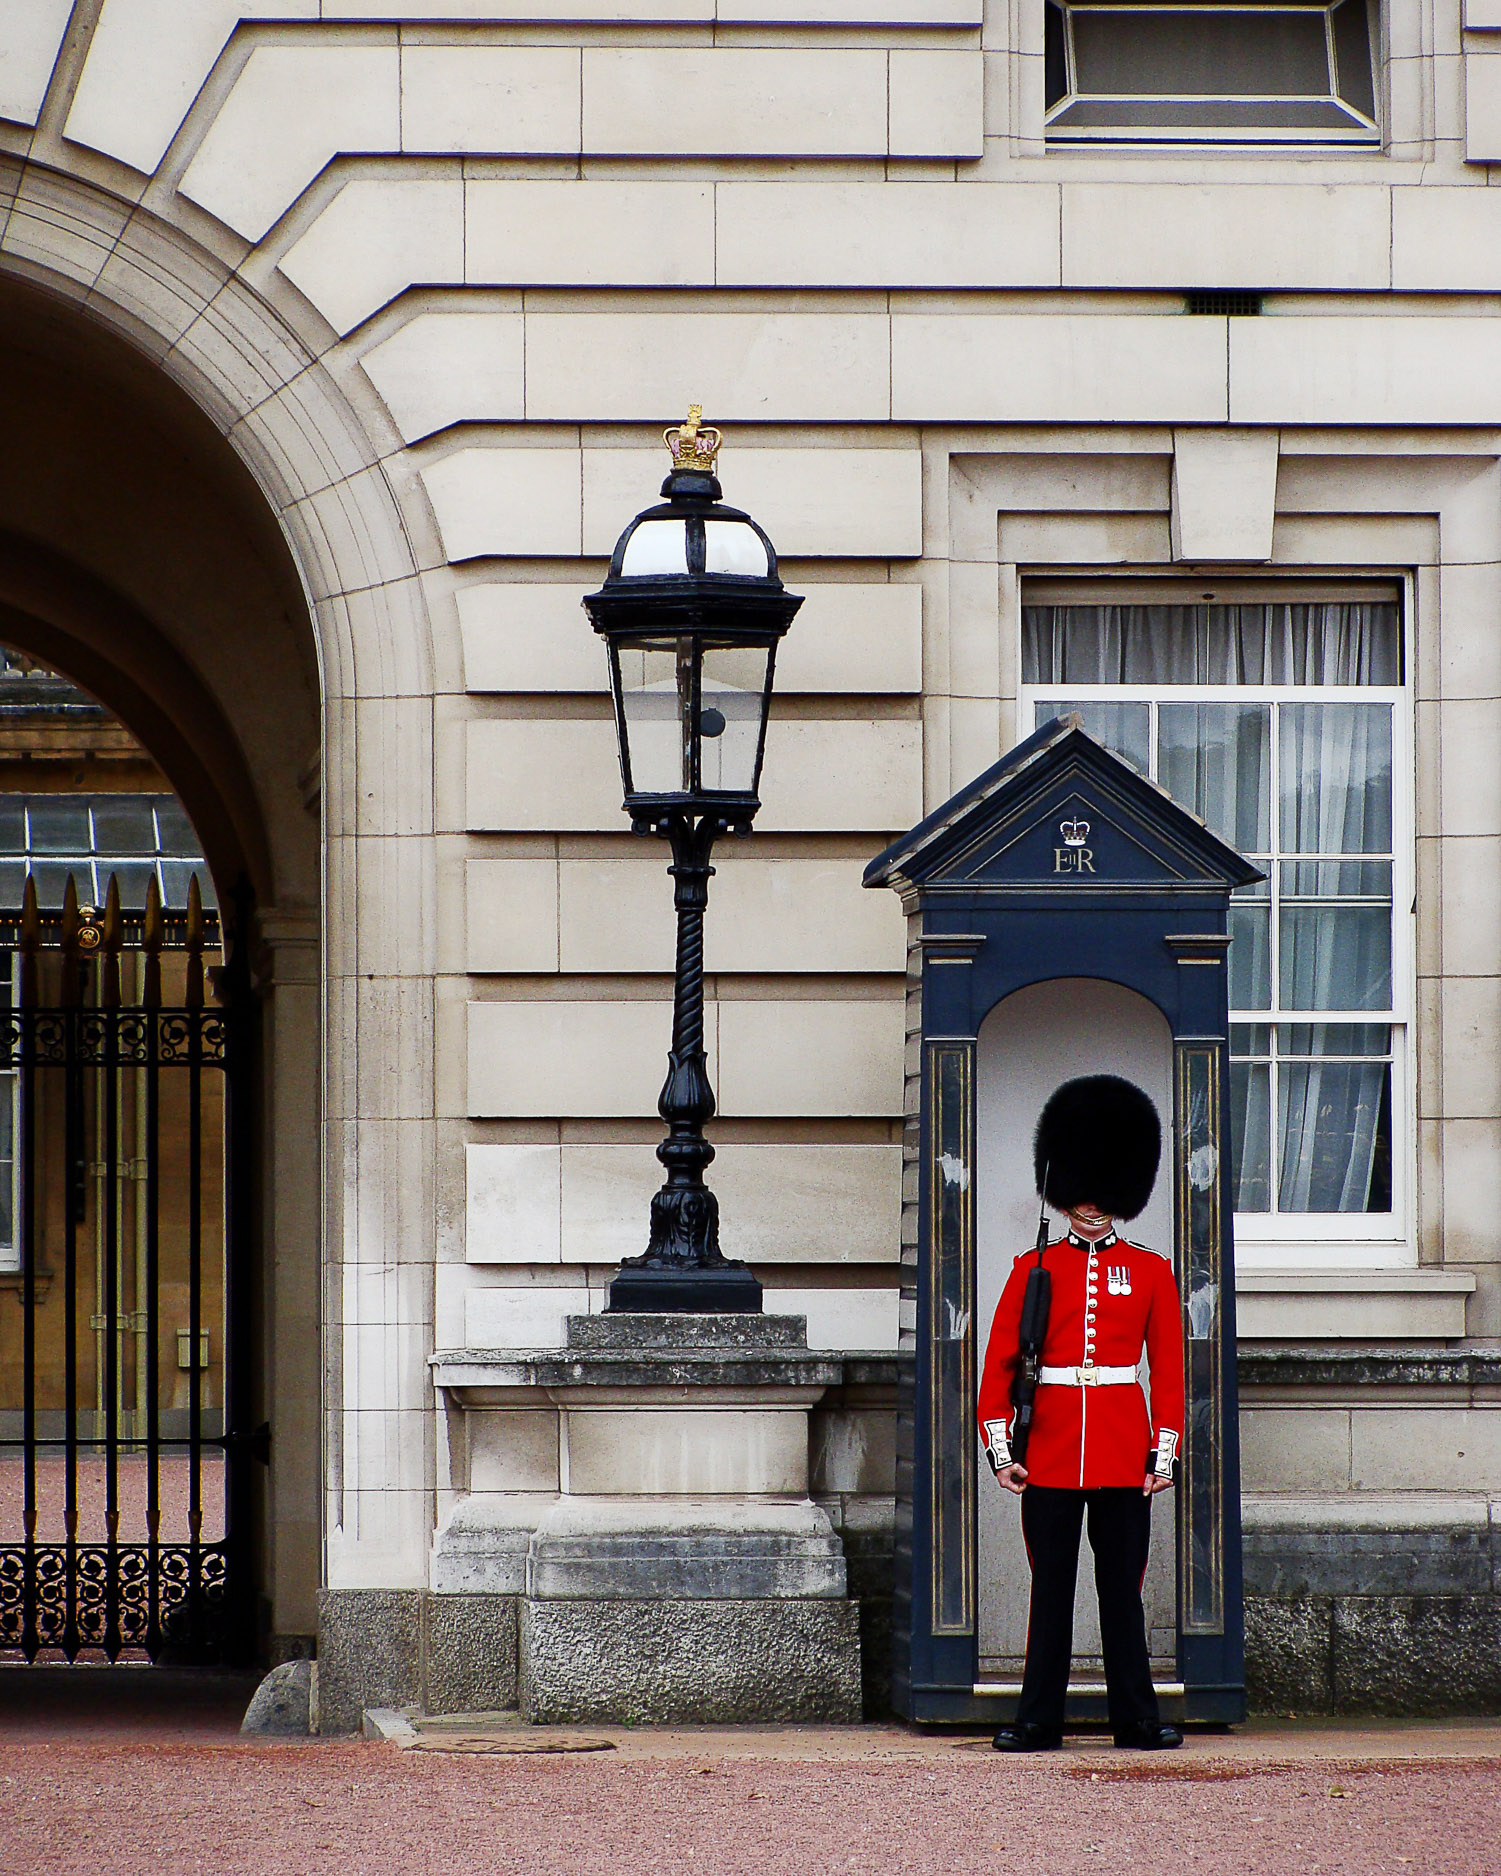 Guard at Buckingham Palace Photo_ BiljaST on Pixabay